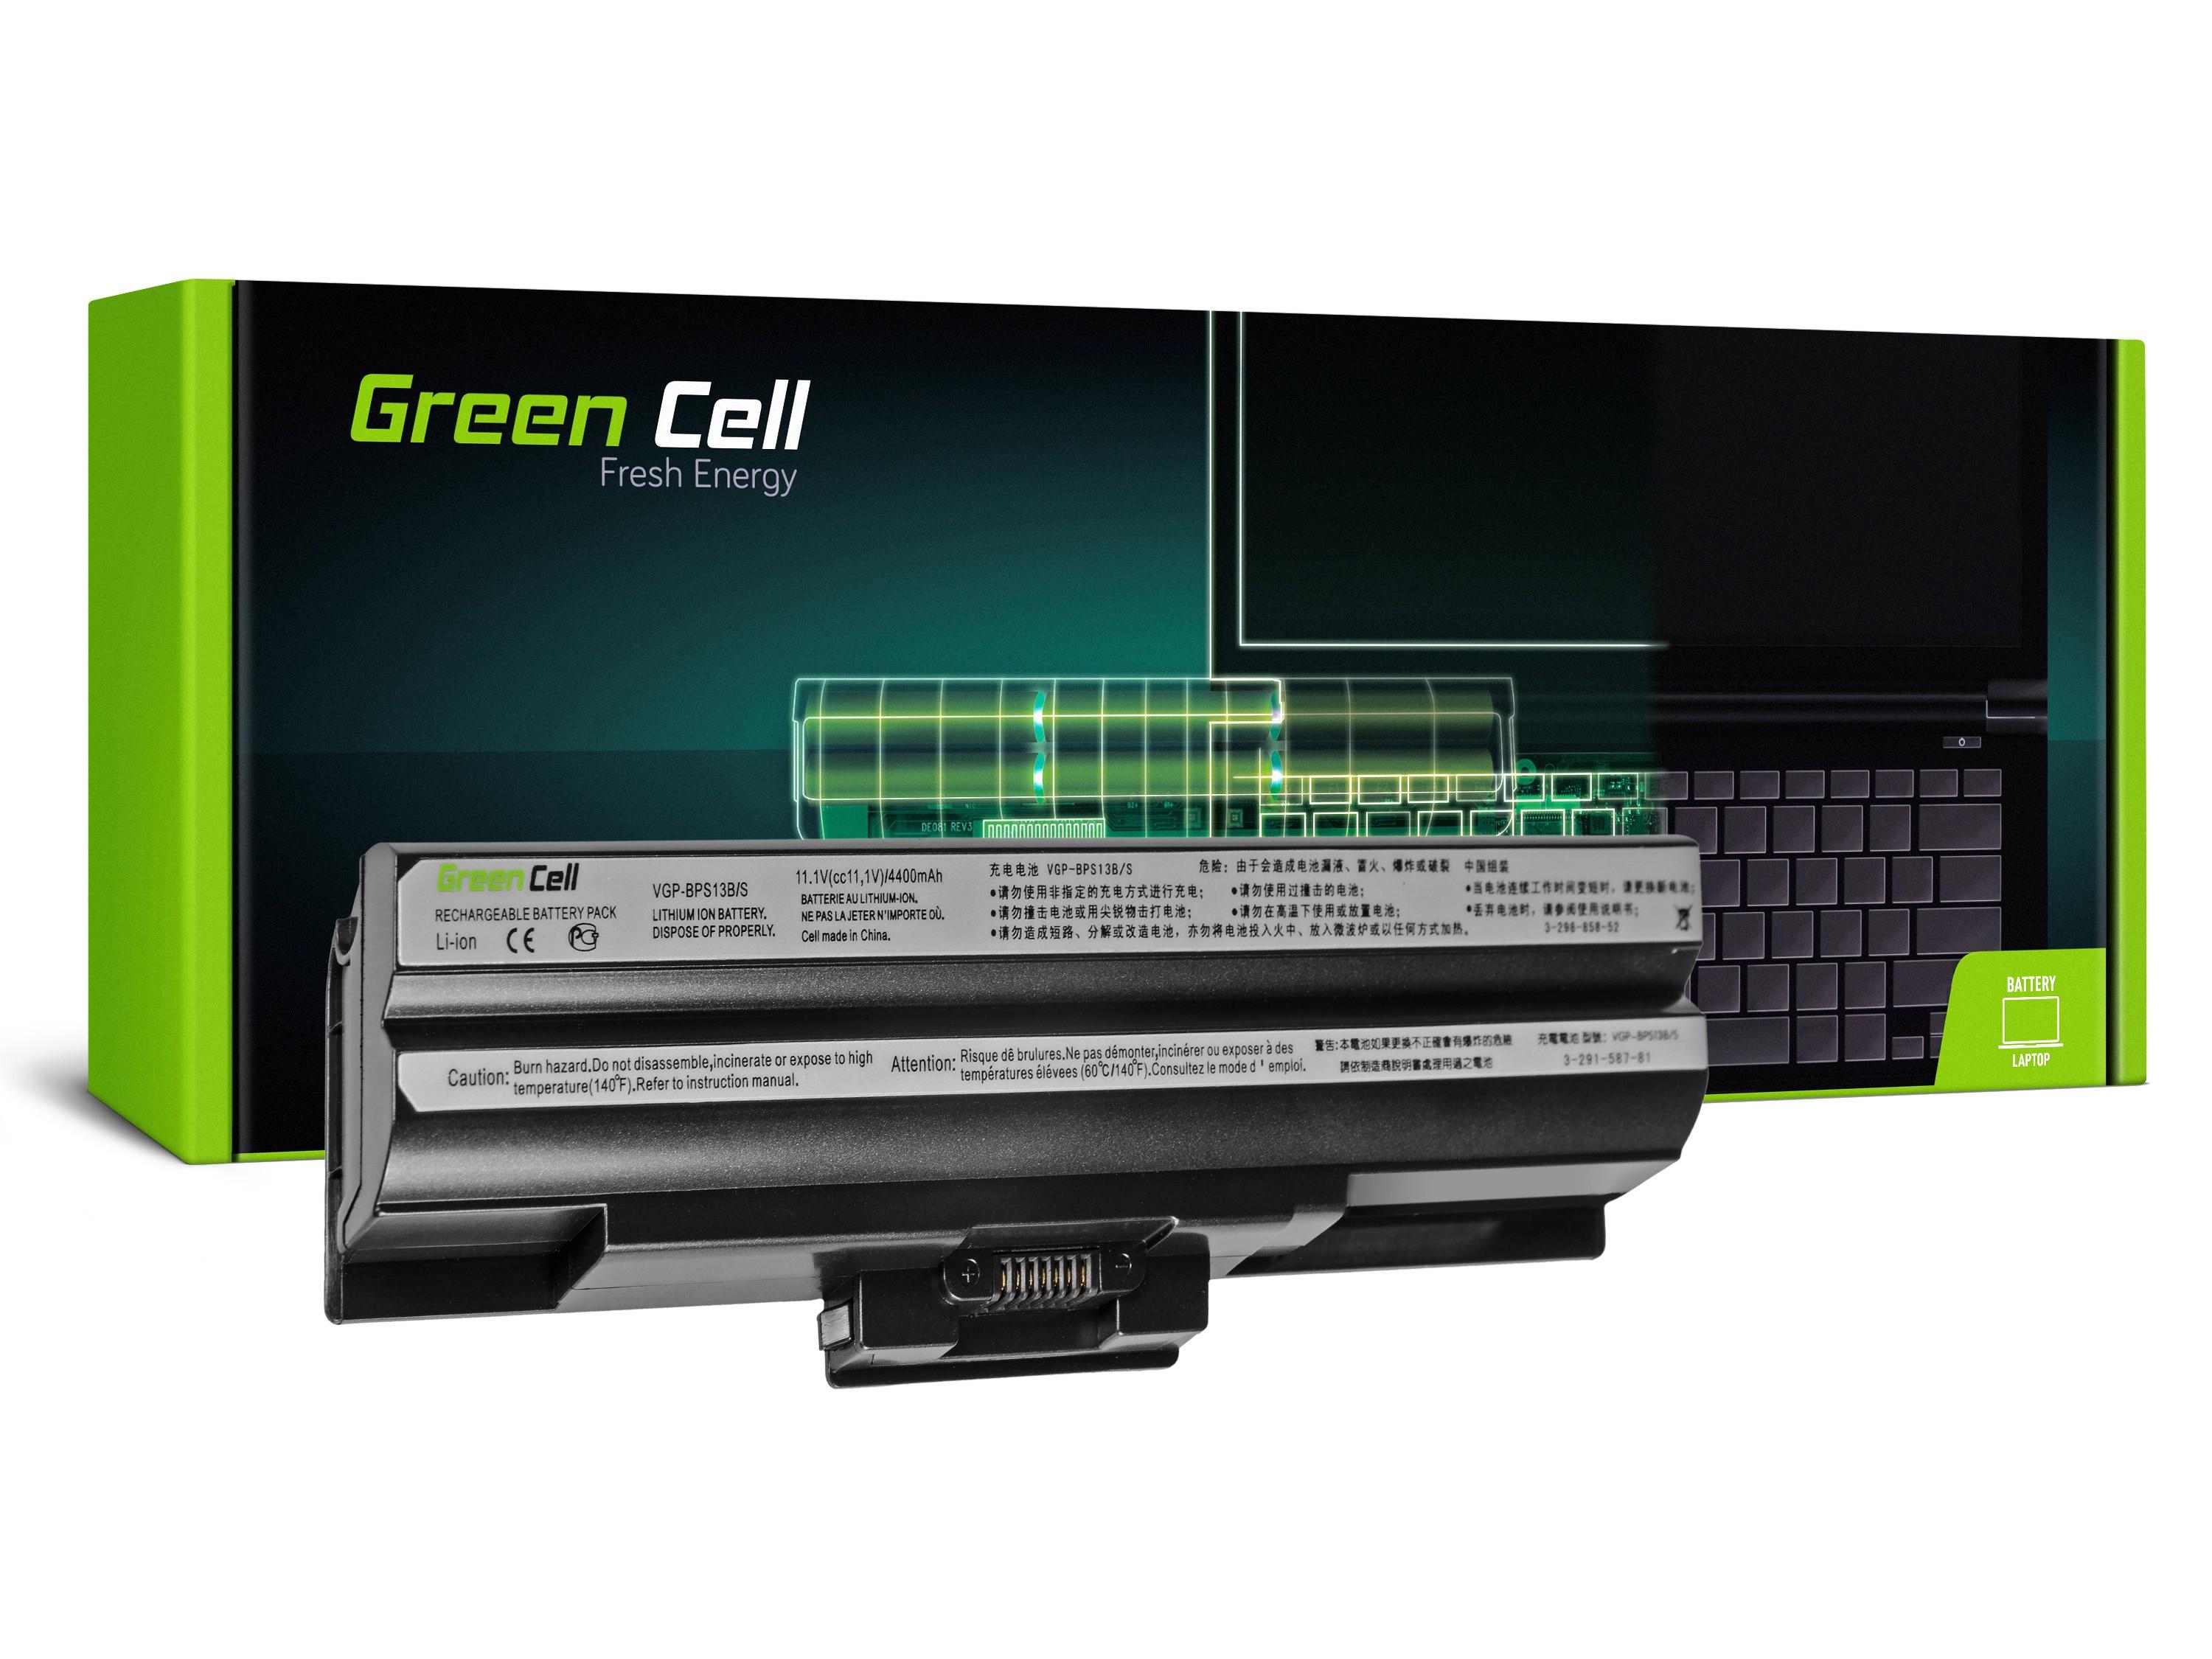 Green Cell Baterie VGP-BPS13 VGP-BPS21A VGP-BPS21B pro Sony Vaio VGN-FW PCG-31311M 3C1M 81112M 81212M (Black) SY03